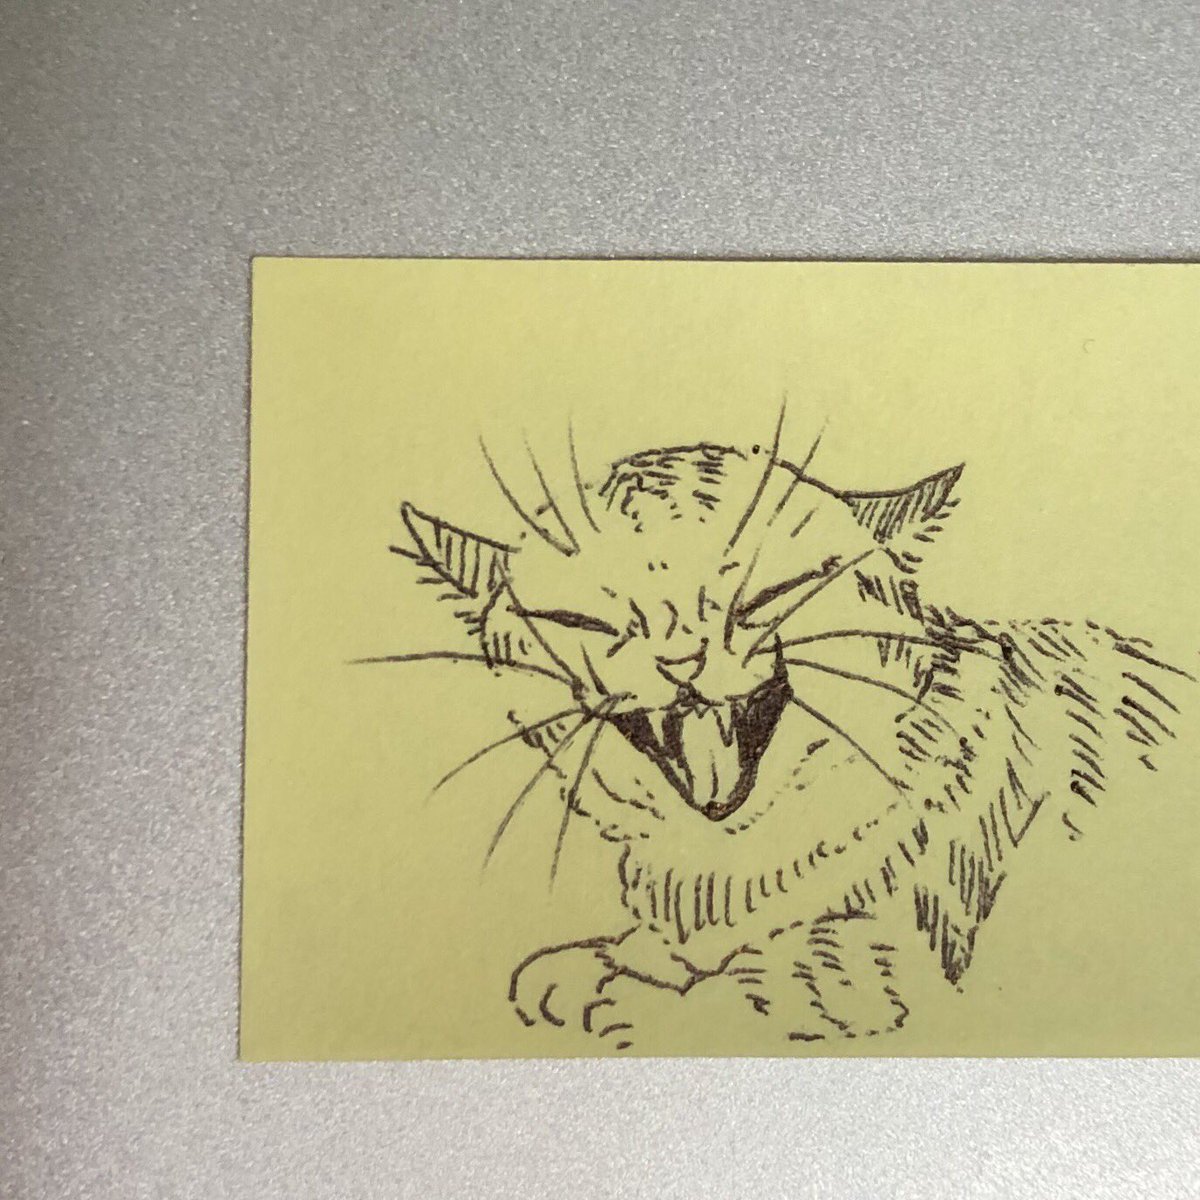 付箋に描いたうちの猫のあくび
猫破顔(にゃはがお)と呼んでいる 